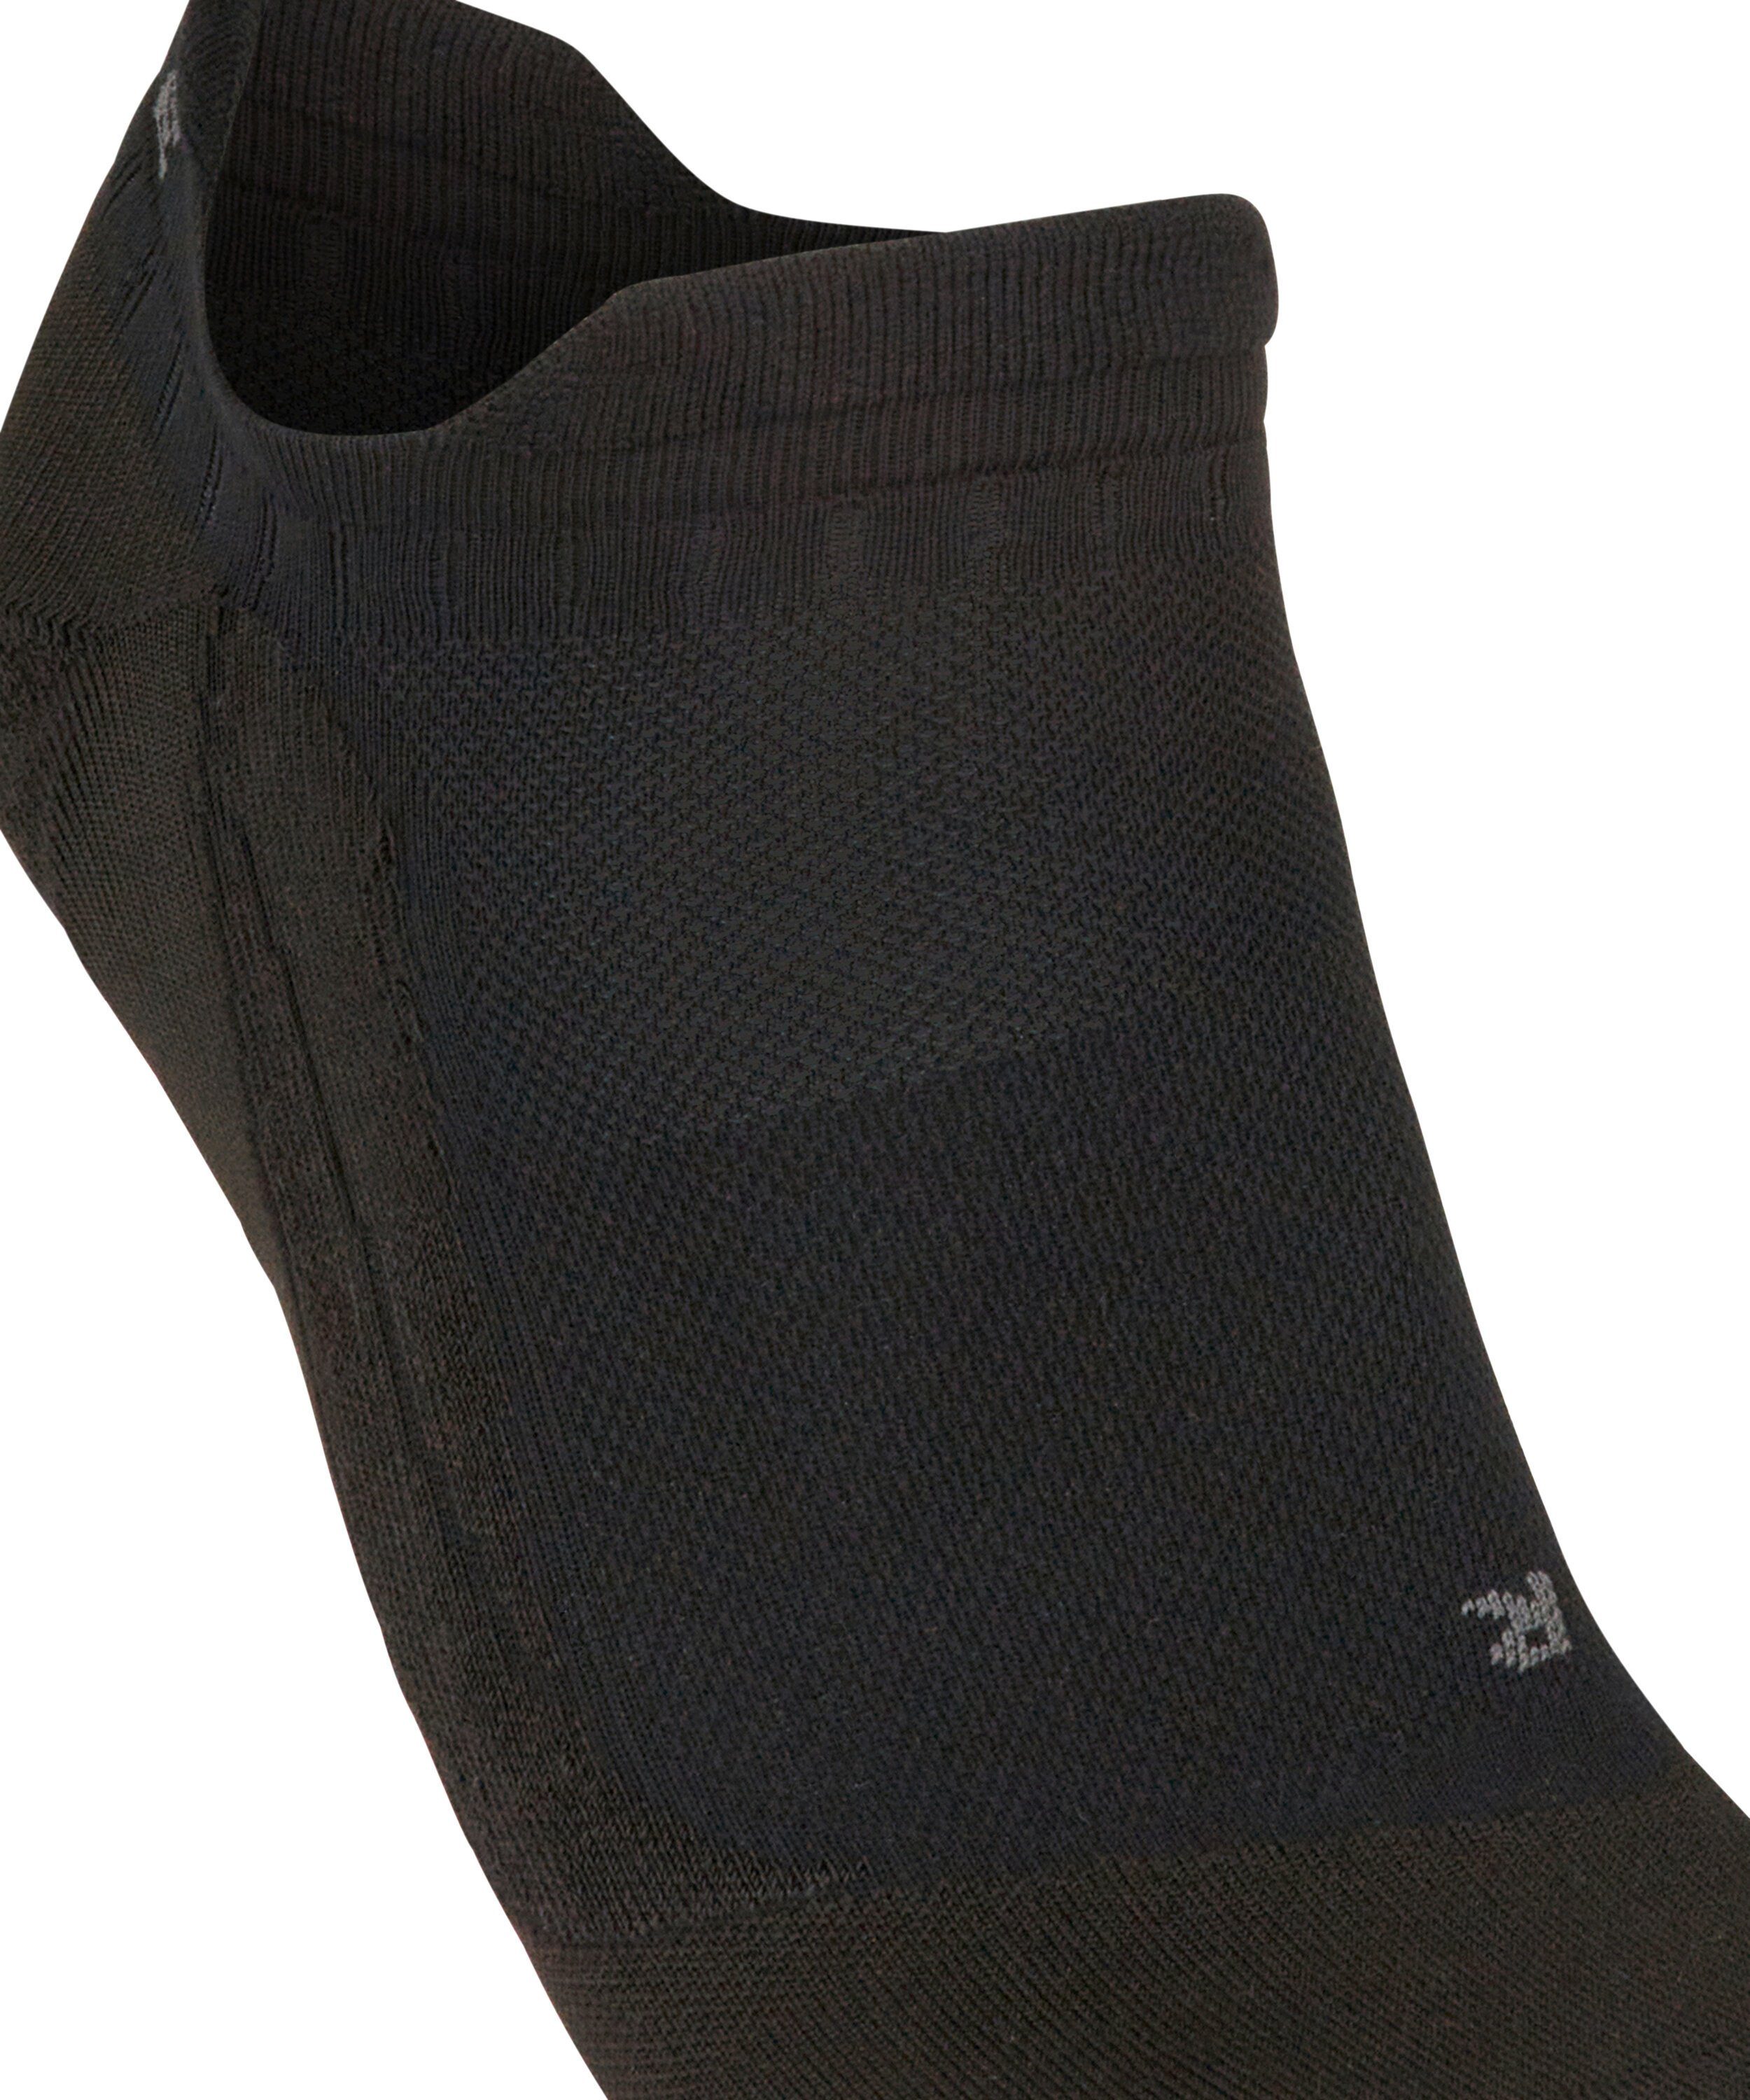 GO5 mit (3000) (1-Paar) leichter Golfschuhe black Polsterung Invisible Sportsocken extra FALKE spikelose für